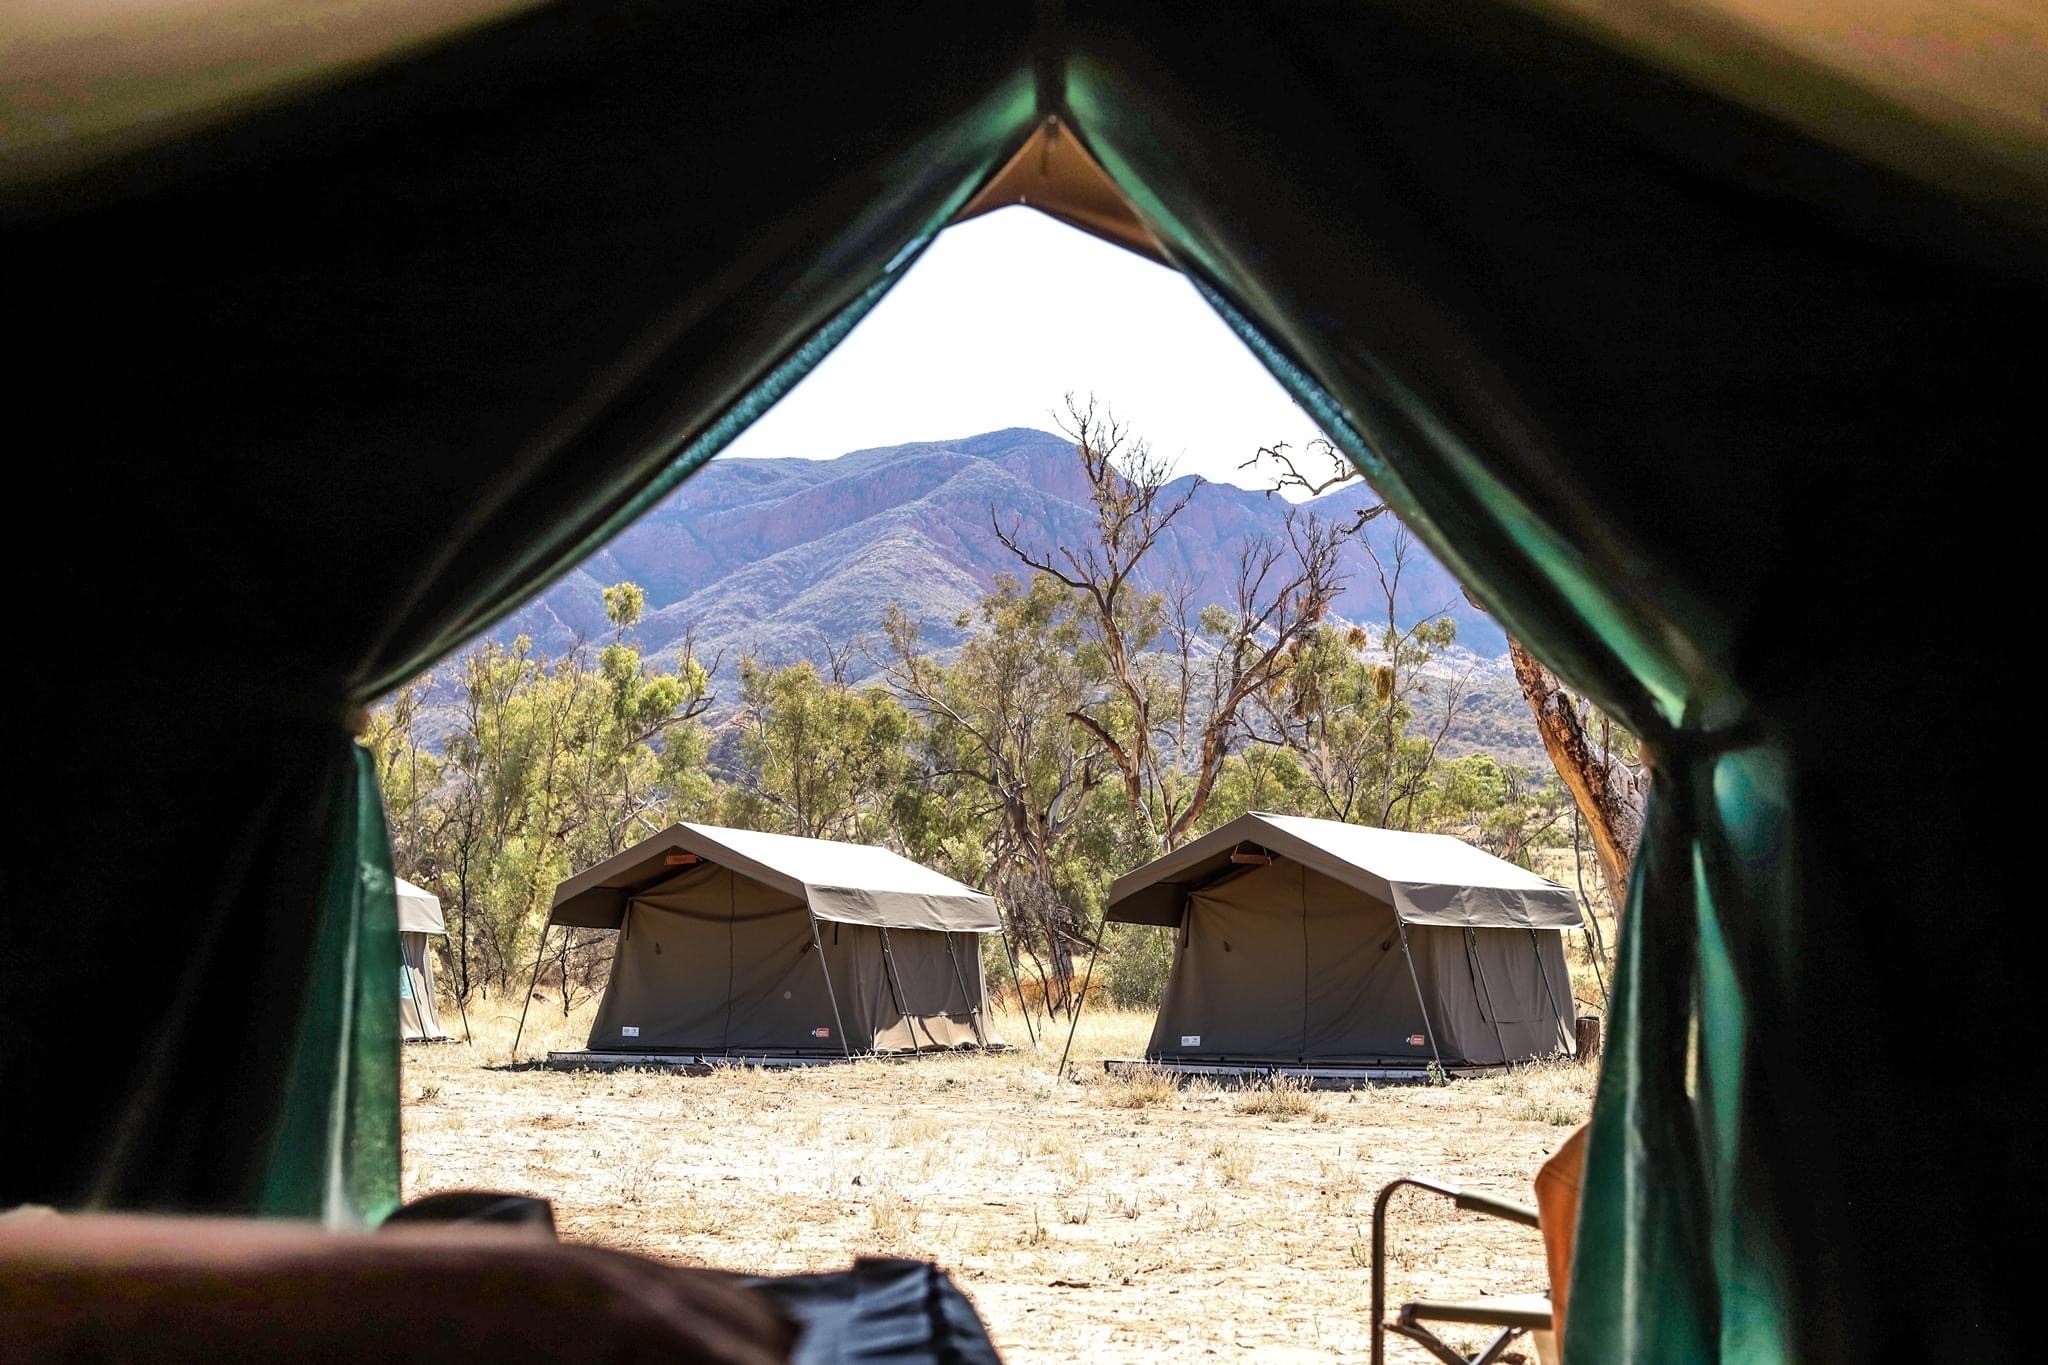 safari tents australia for sale